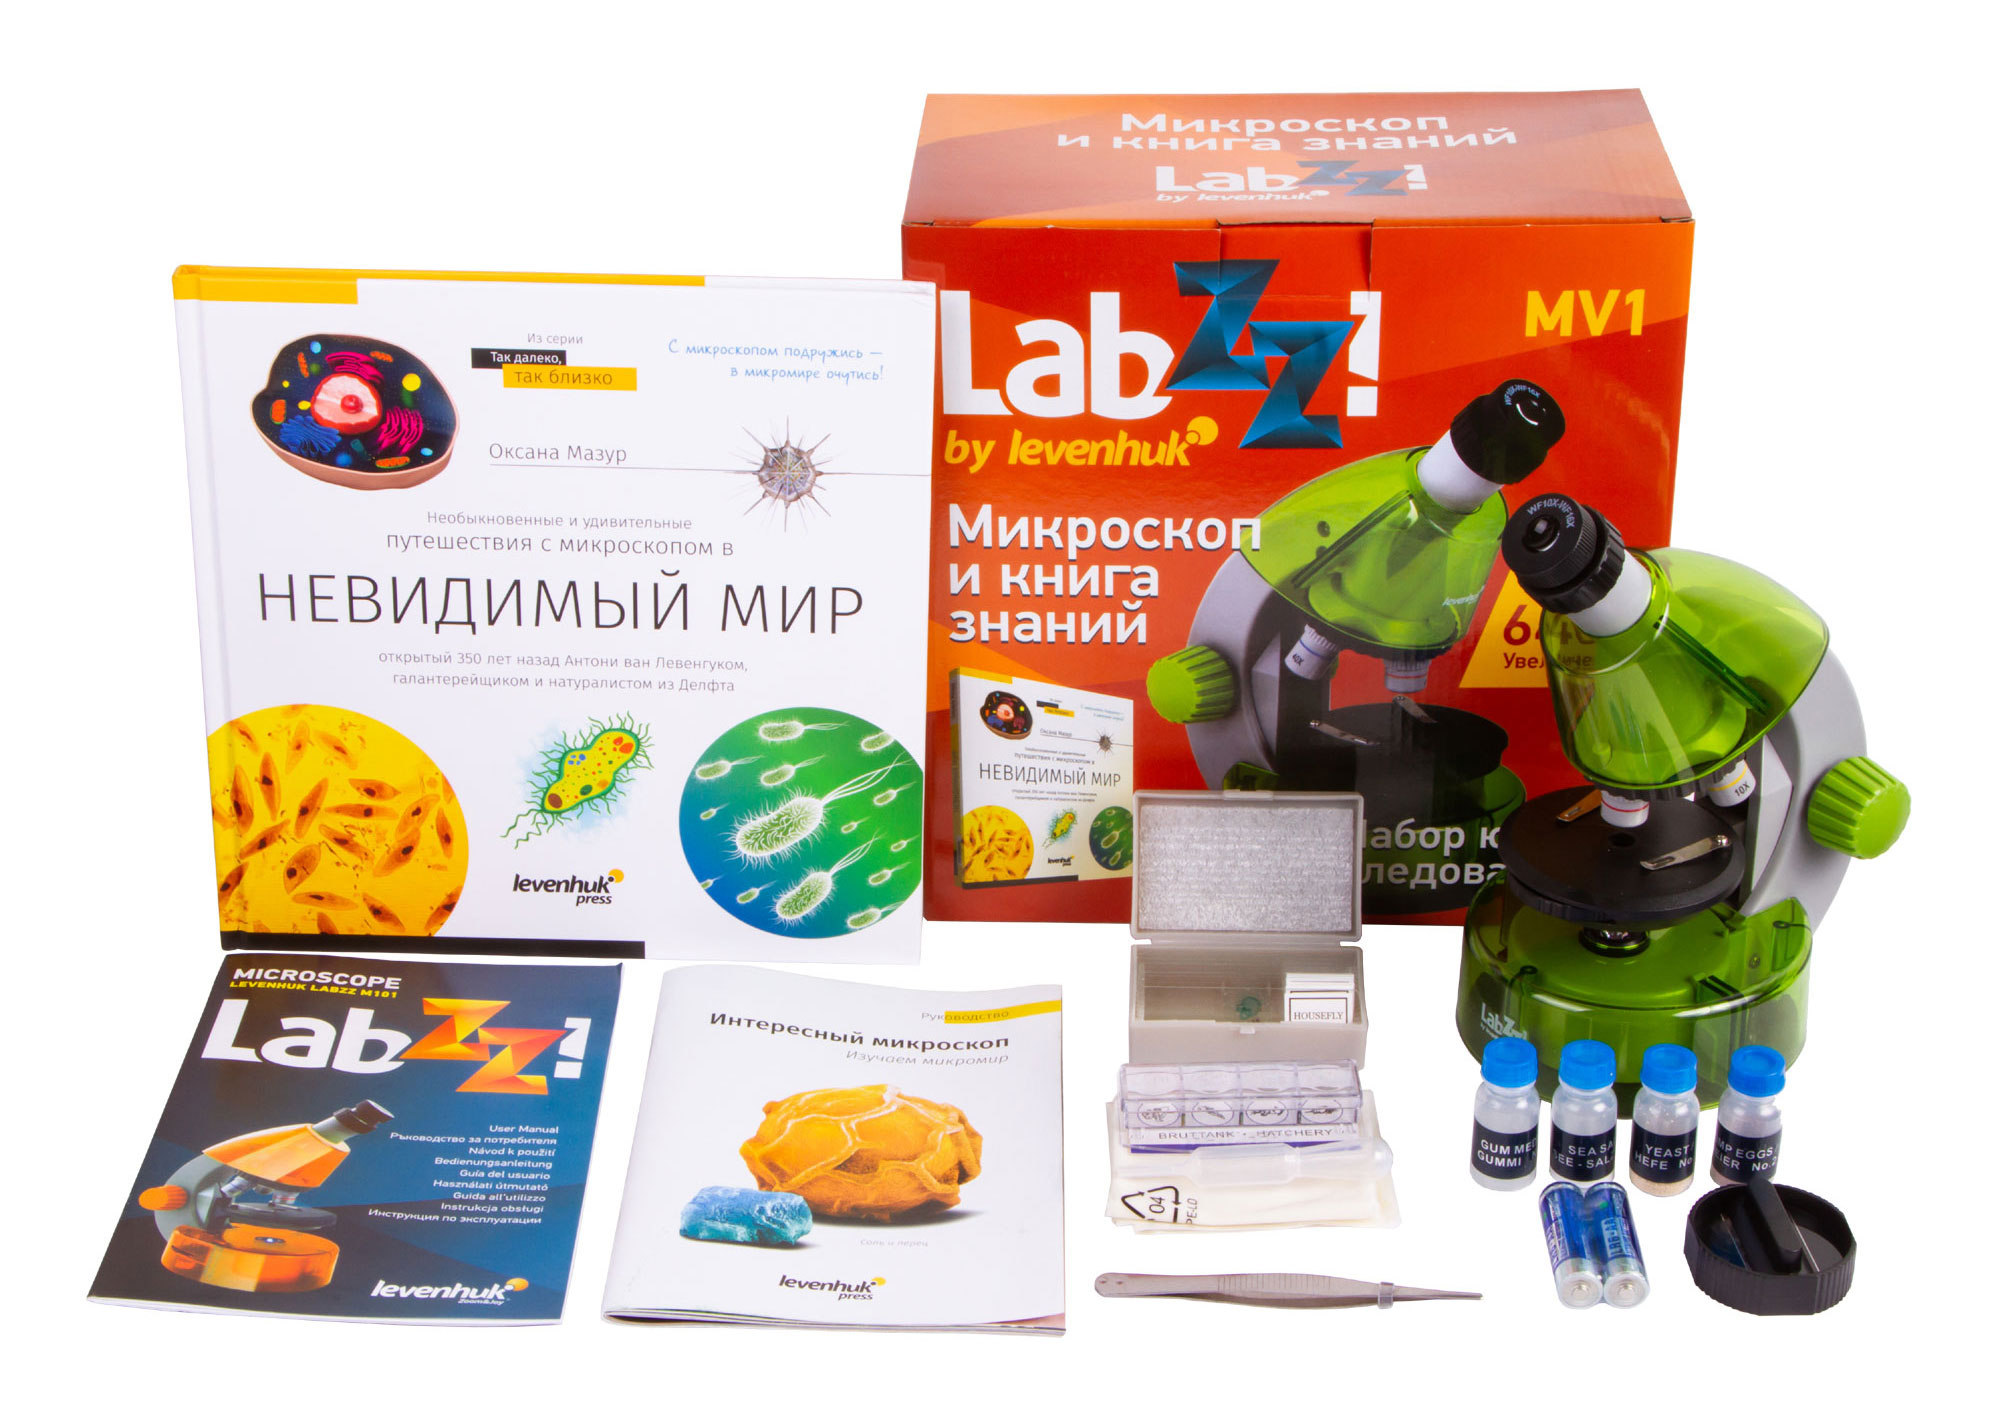 Набор Levenhuk (Левенгук) LabZZ MV1 Lime: микроскоп и книга